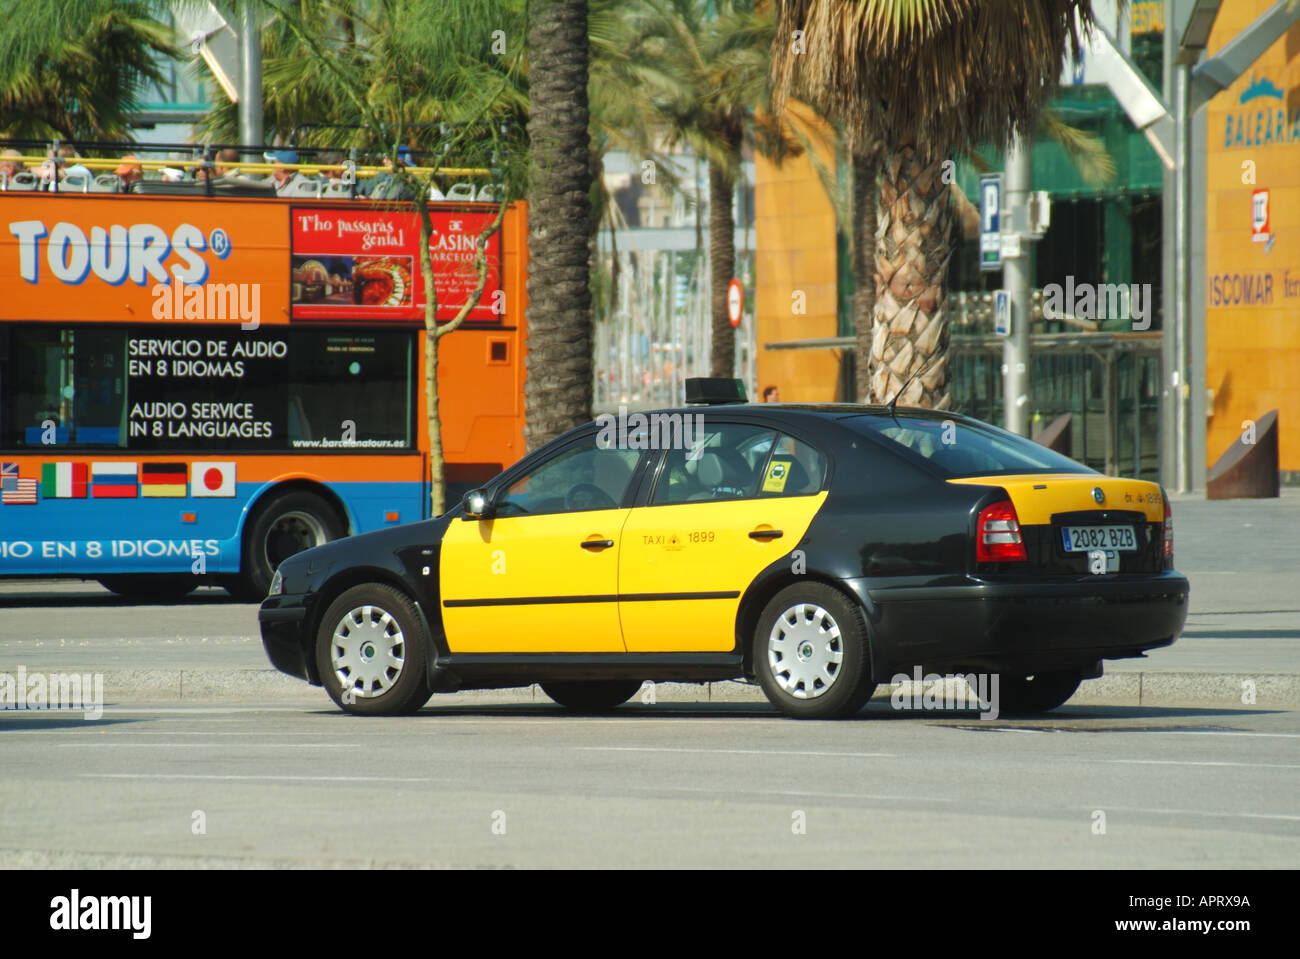 Vue latérale de l'emblématique taxi espagnol jaune et noir et chauffeur passant par un bus touristique à toit ouvert de Barcelone dans la rue Catalogne Espagne UE Banque D'Images